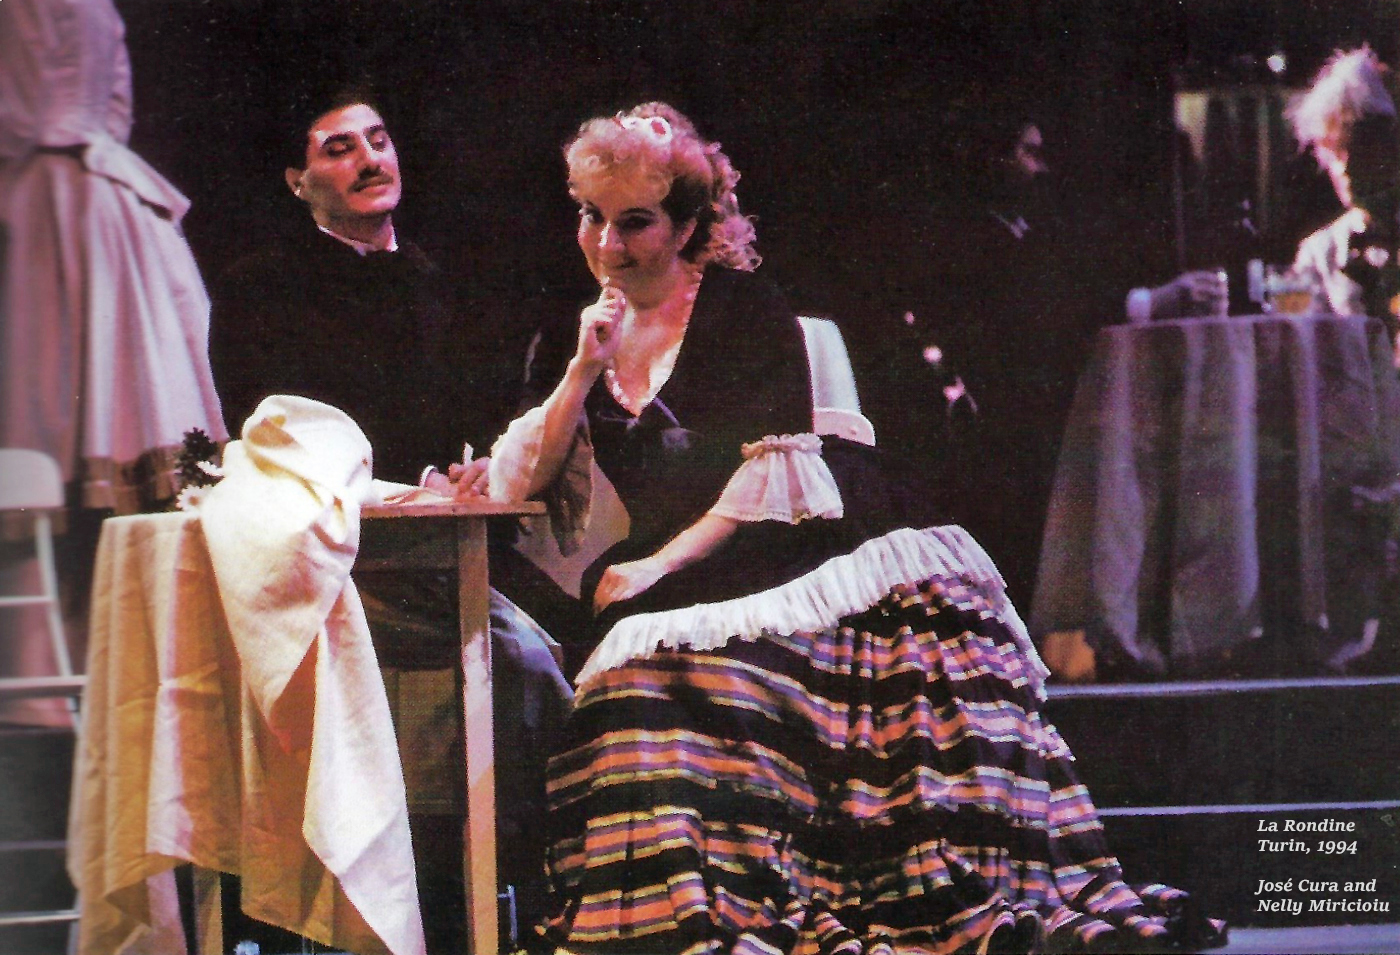 Jos Cura as Ruggero Lastouc in the 1994 Turin Production of La rondine.